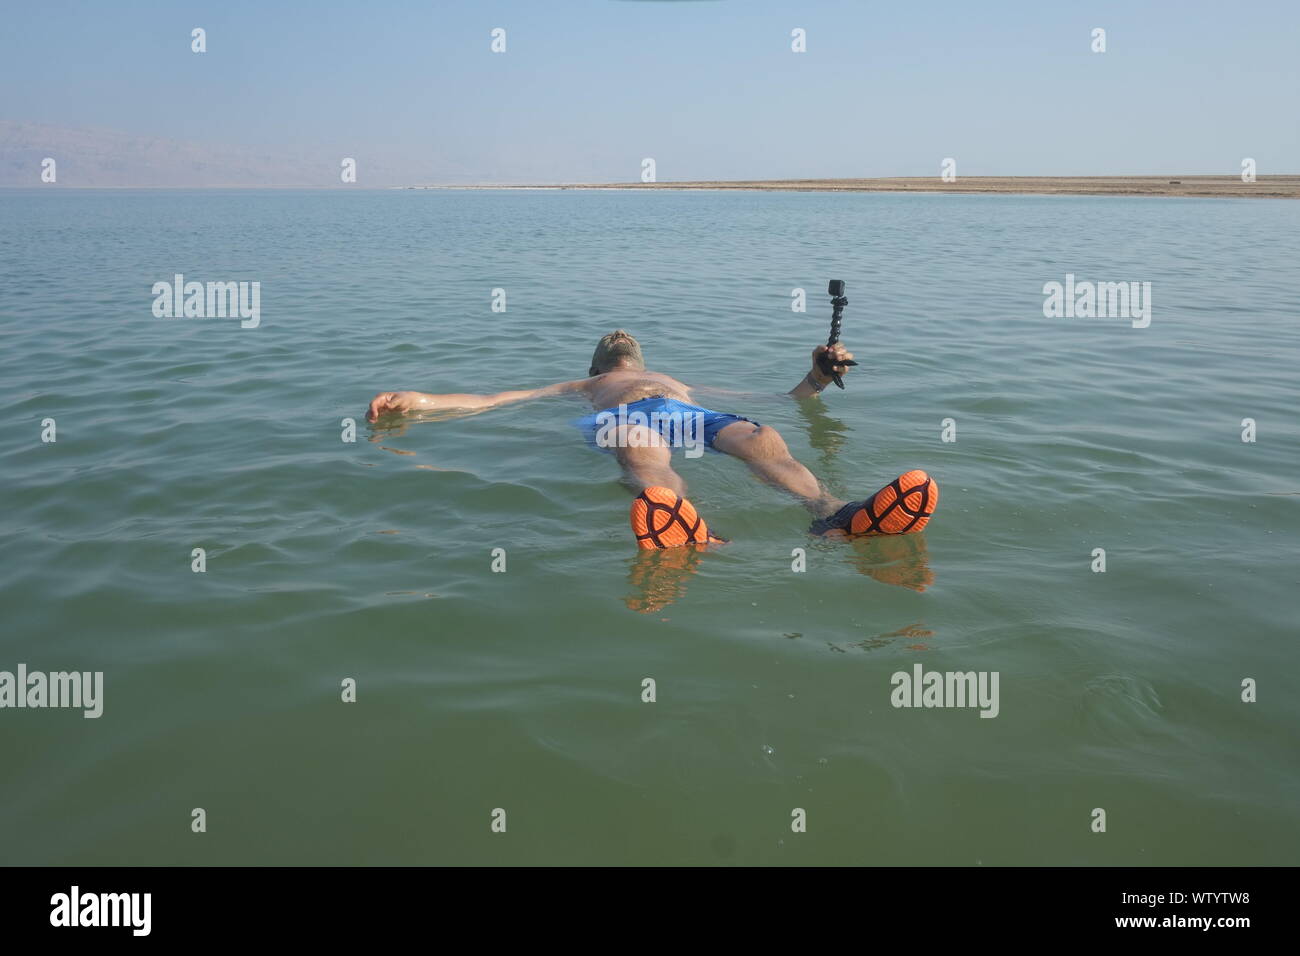 Il Mar Morto è un lago salato delimitato dal Giordano verso oriente e Israele e la Cisgiordania all'occidente. Si trova in Giordania Rift Valley Foto Stock